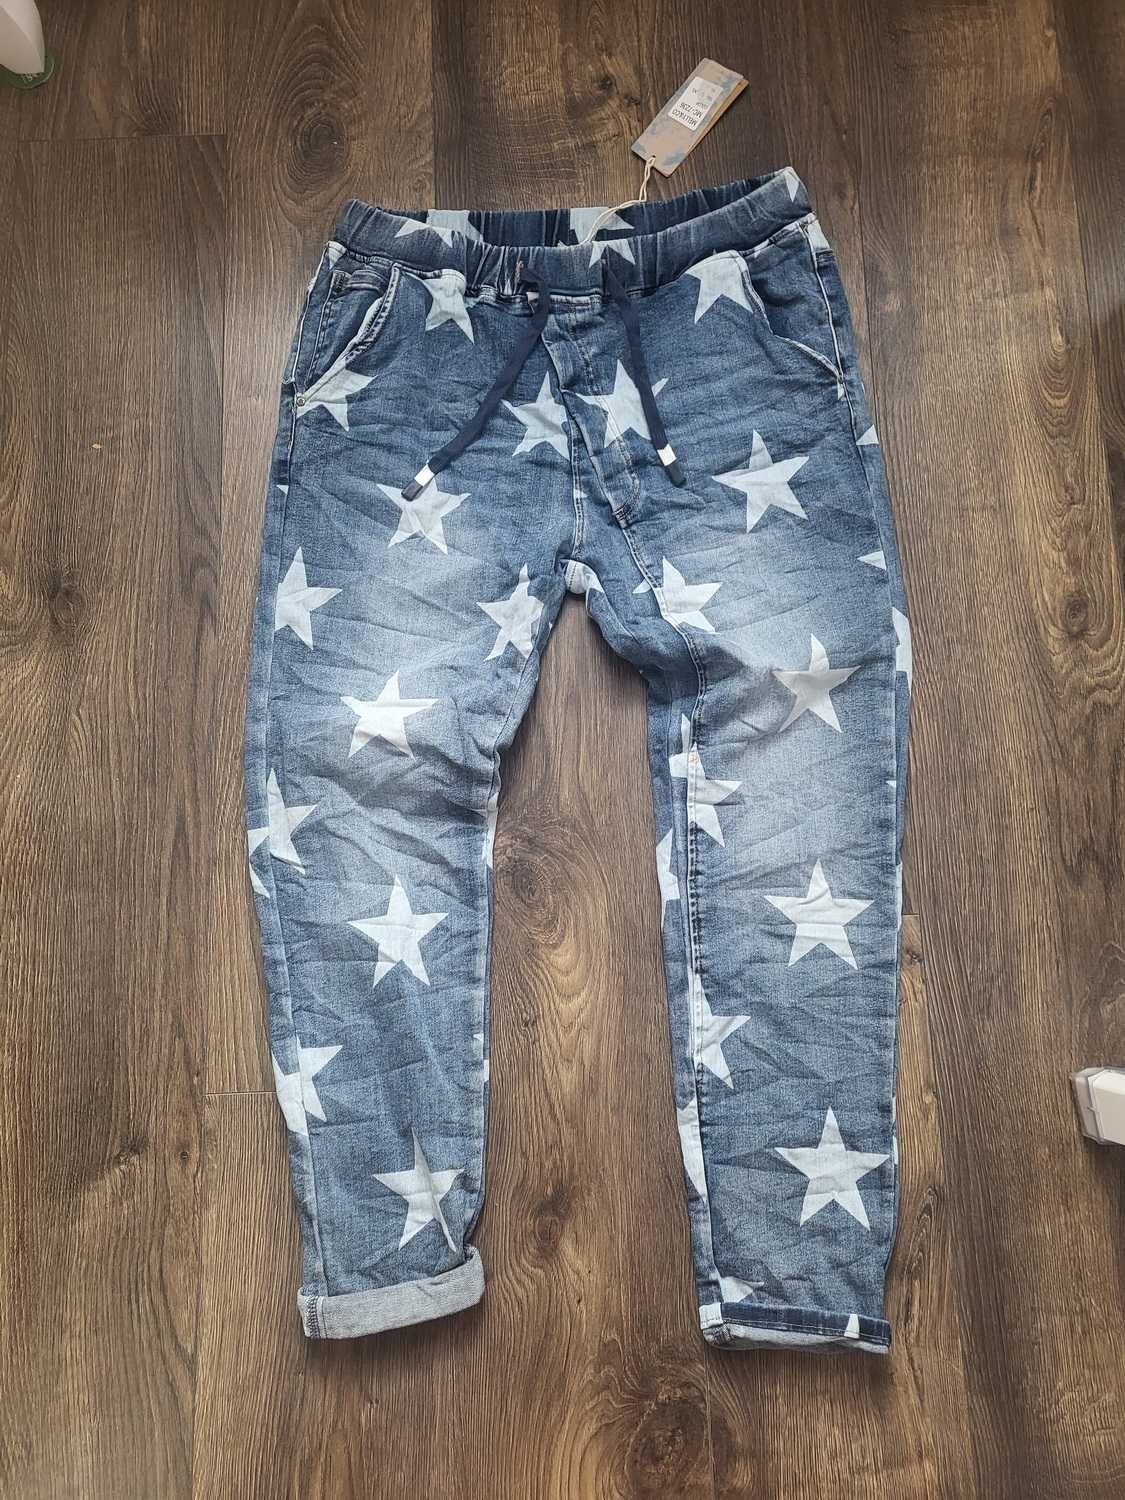 Spodnie jeans z gwiazdami 42